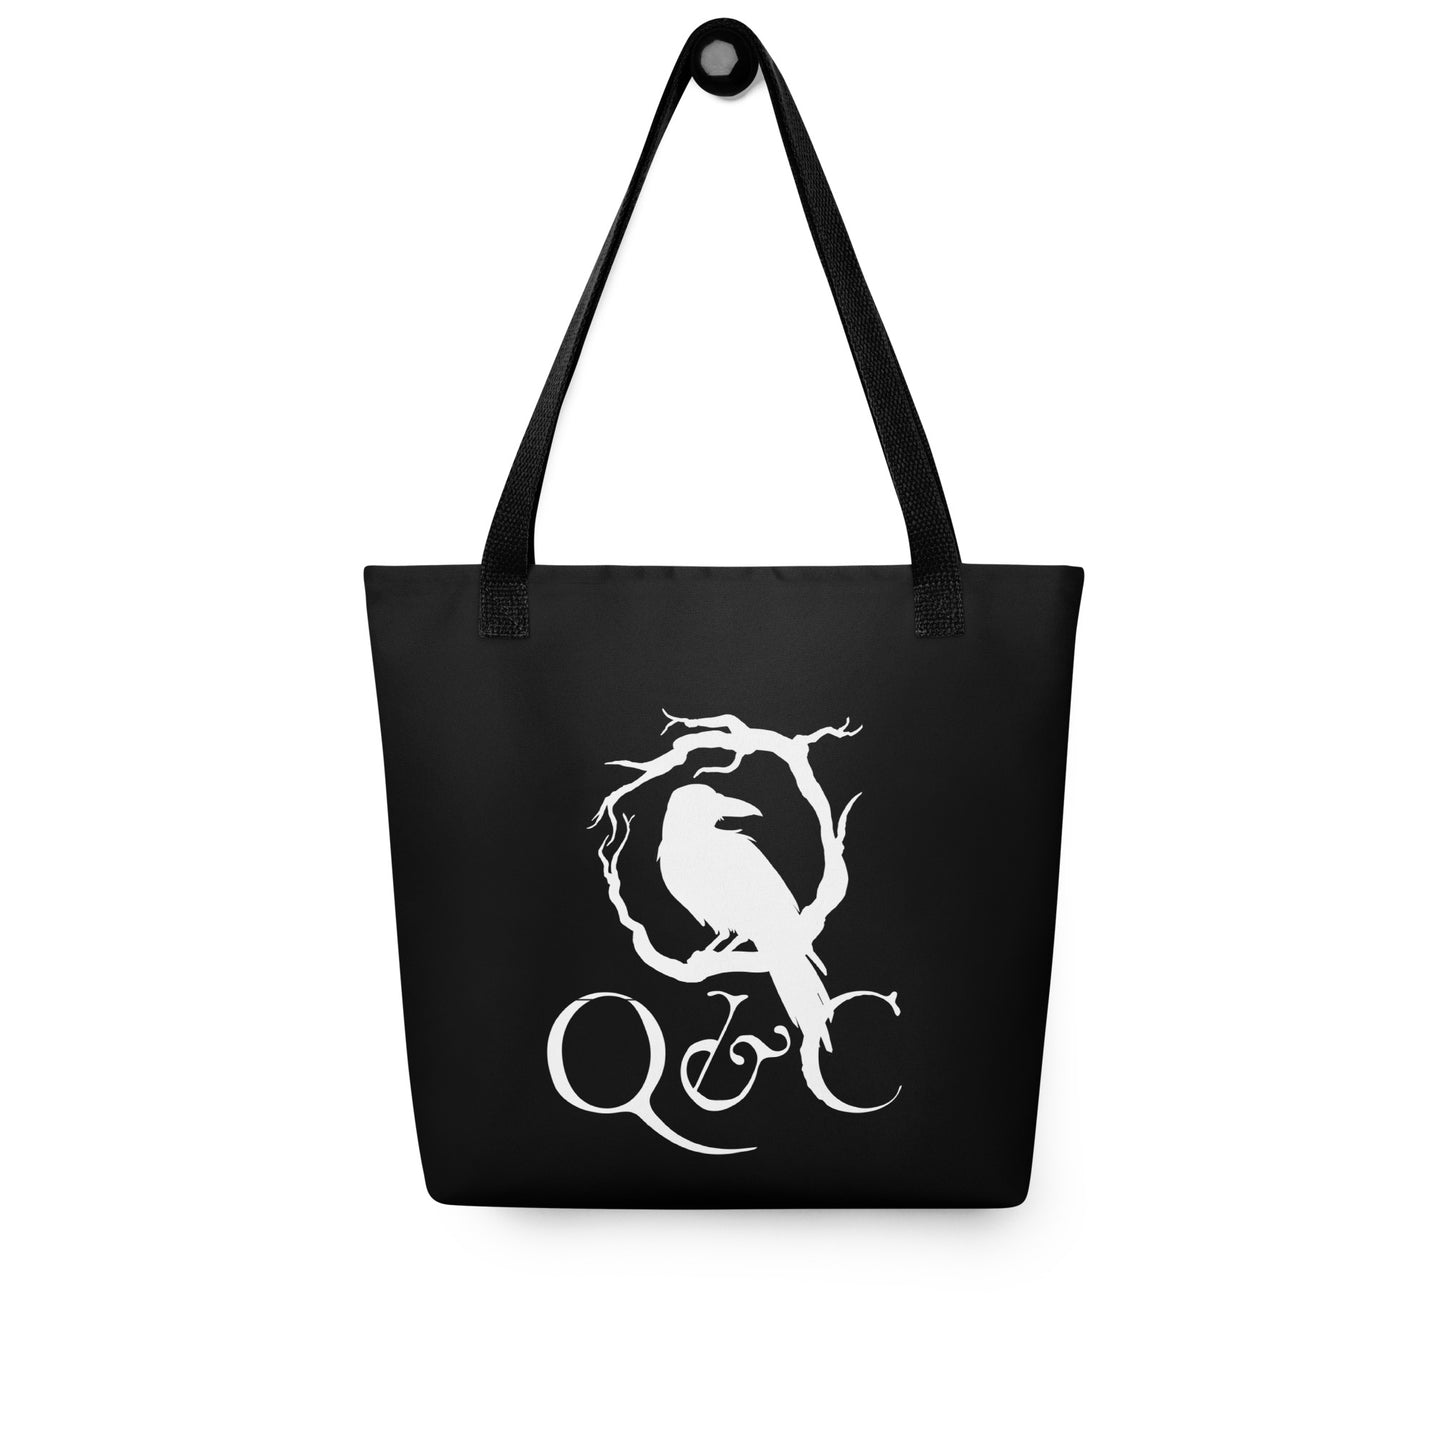 Q&C Tote Bag